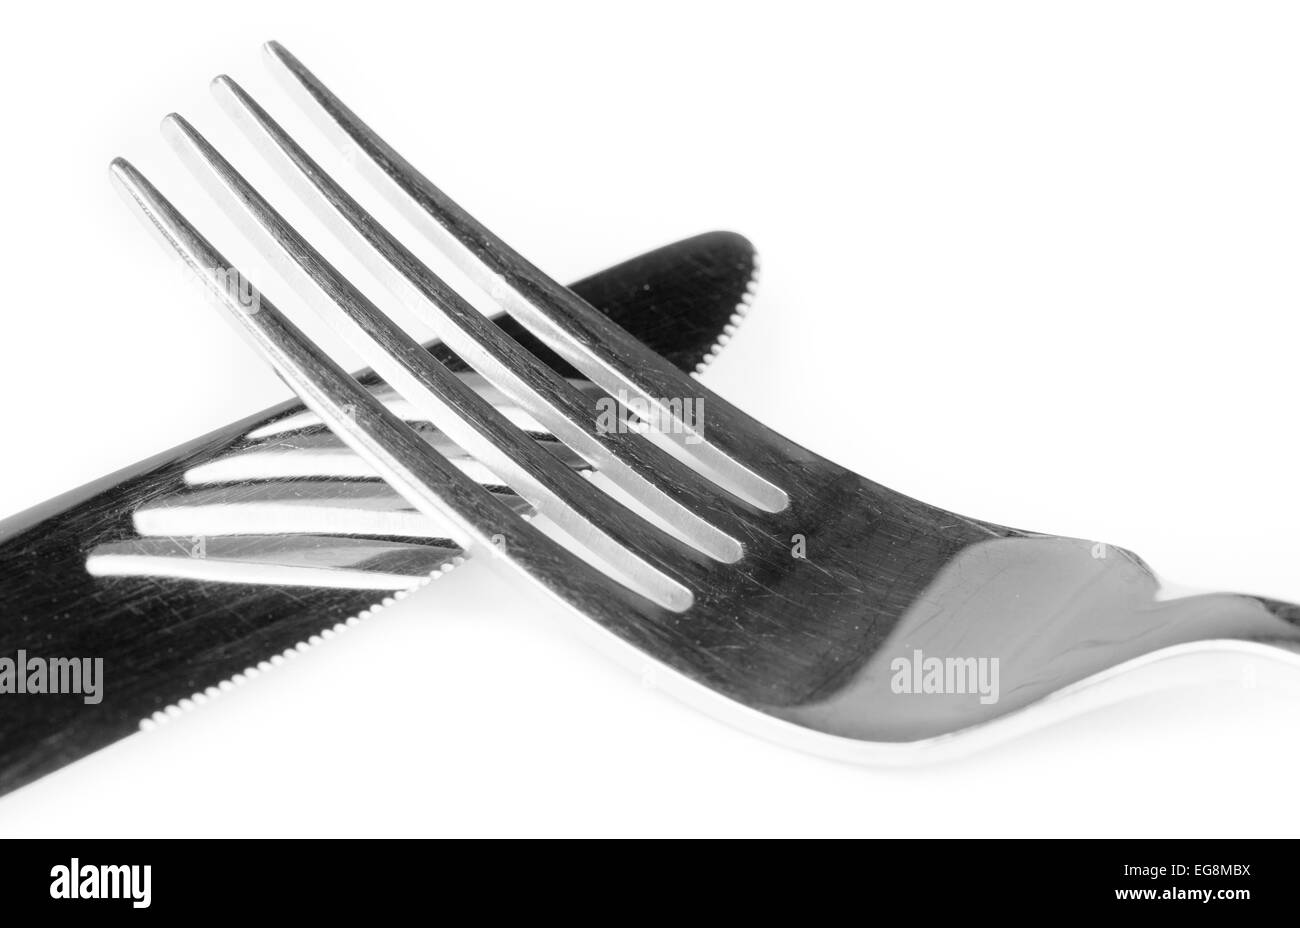 Fourchette et couteau en acier inoxydable. Des couverts ou des ustensiles libre. Banque D'Images